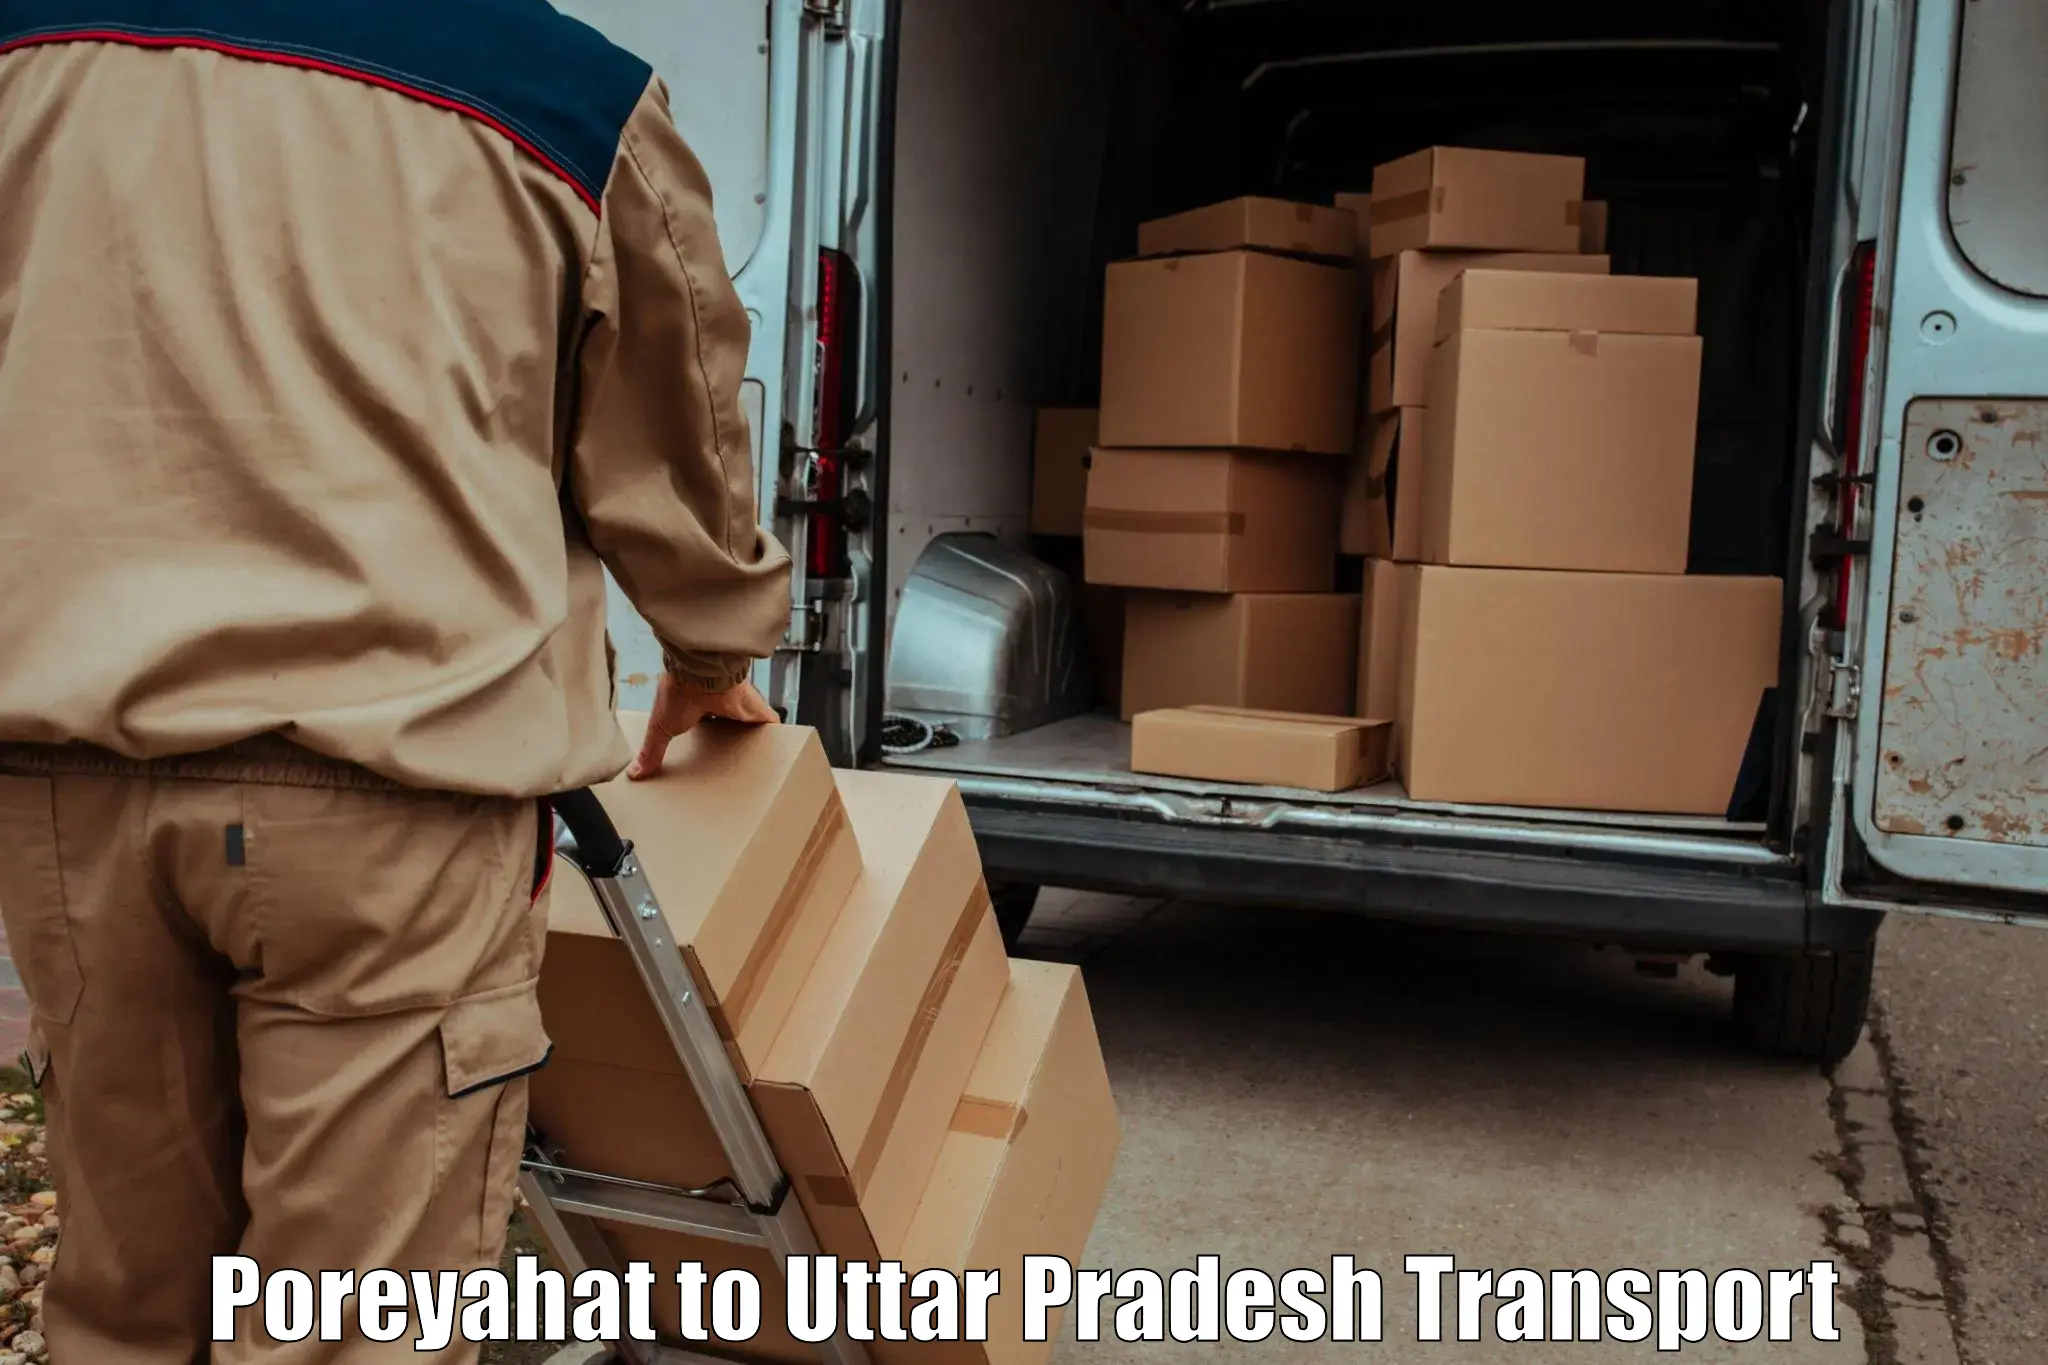 Transport in sharing Poreyahat to Bighapur